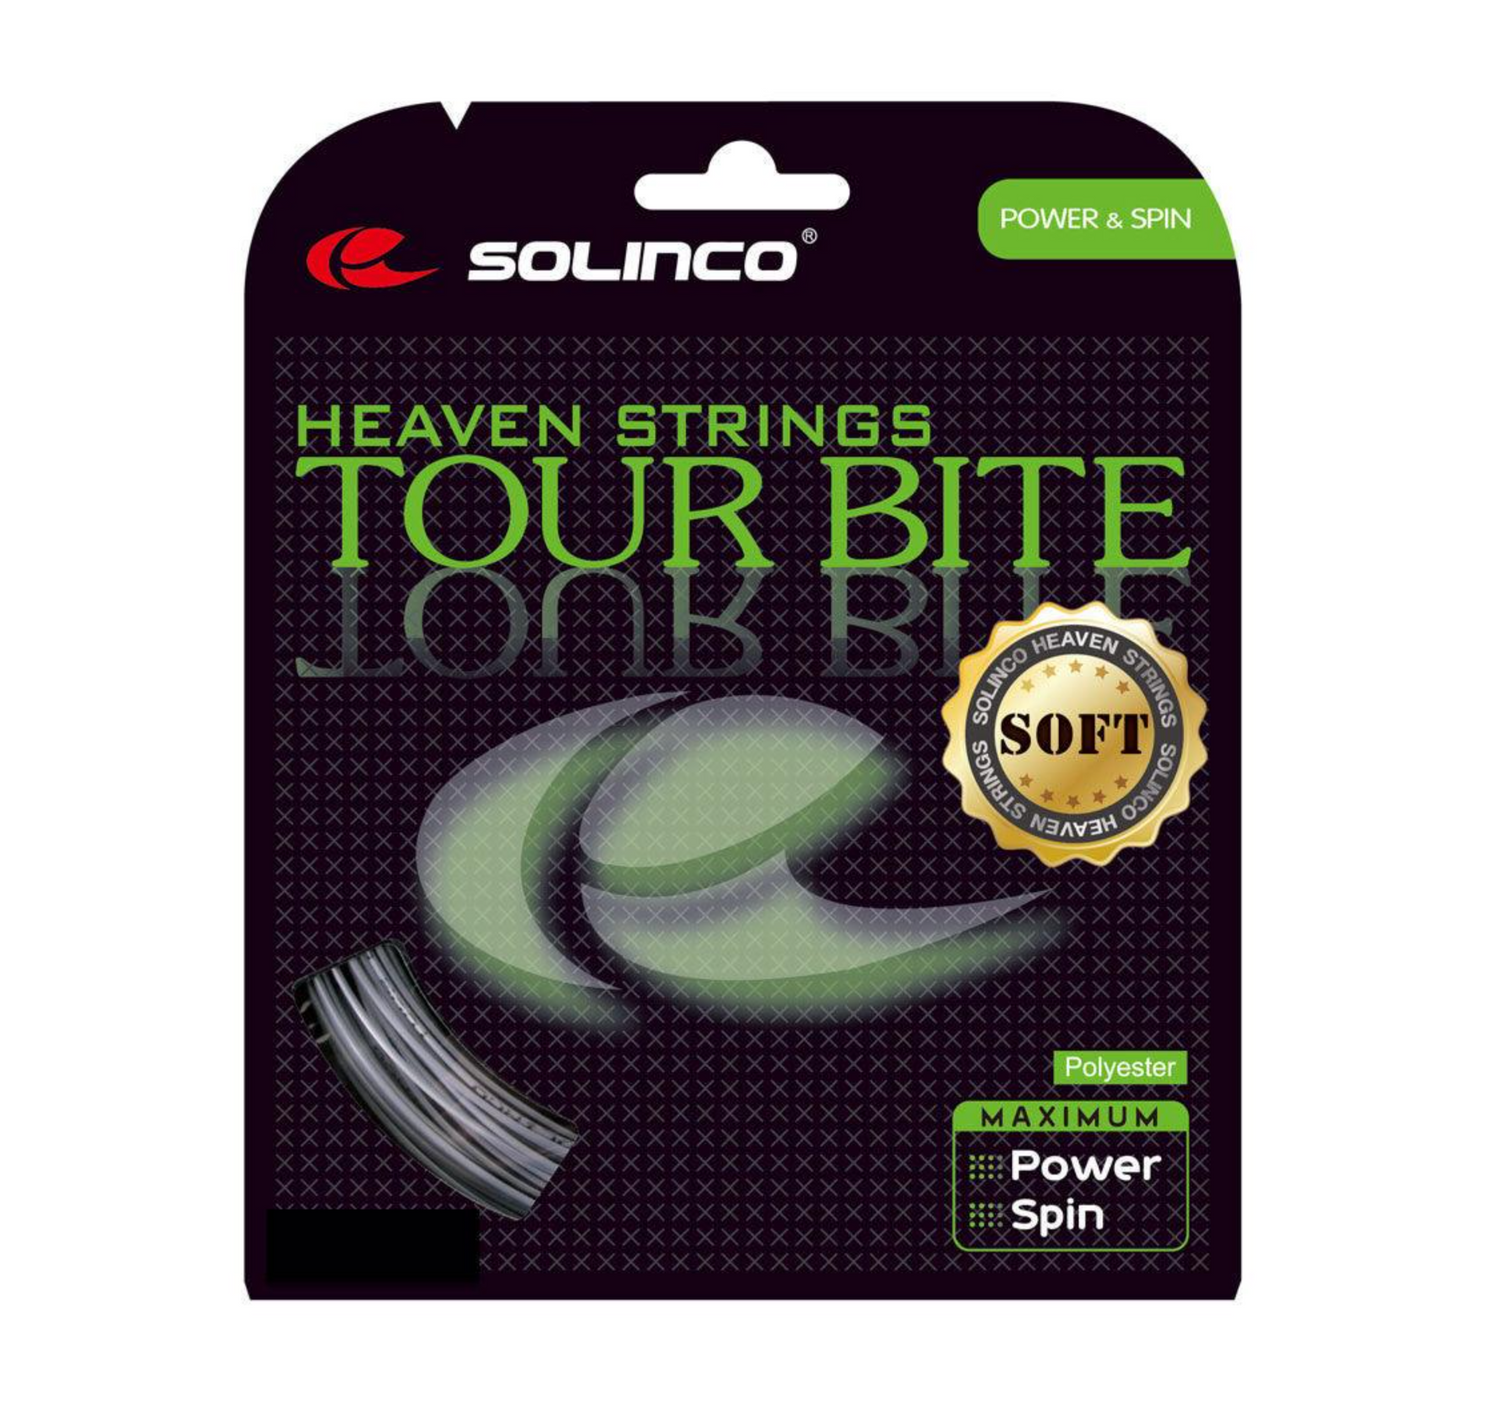 Solinco Tour Bite Soft 18 Tennis String